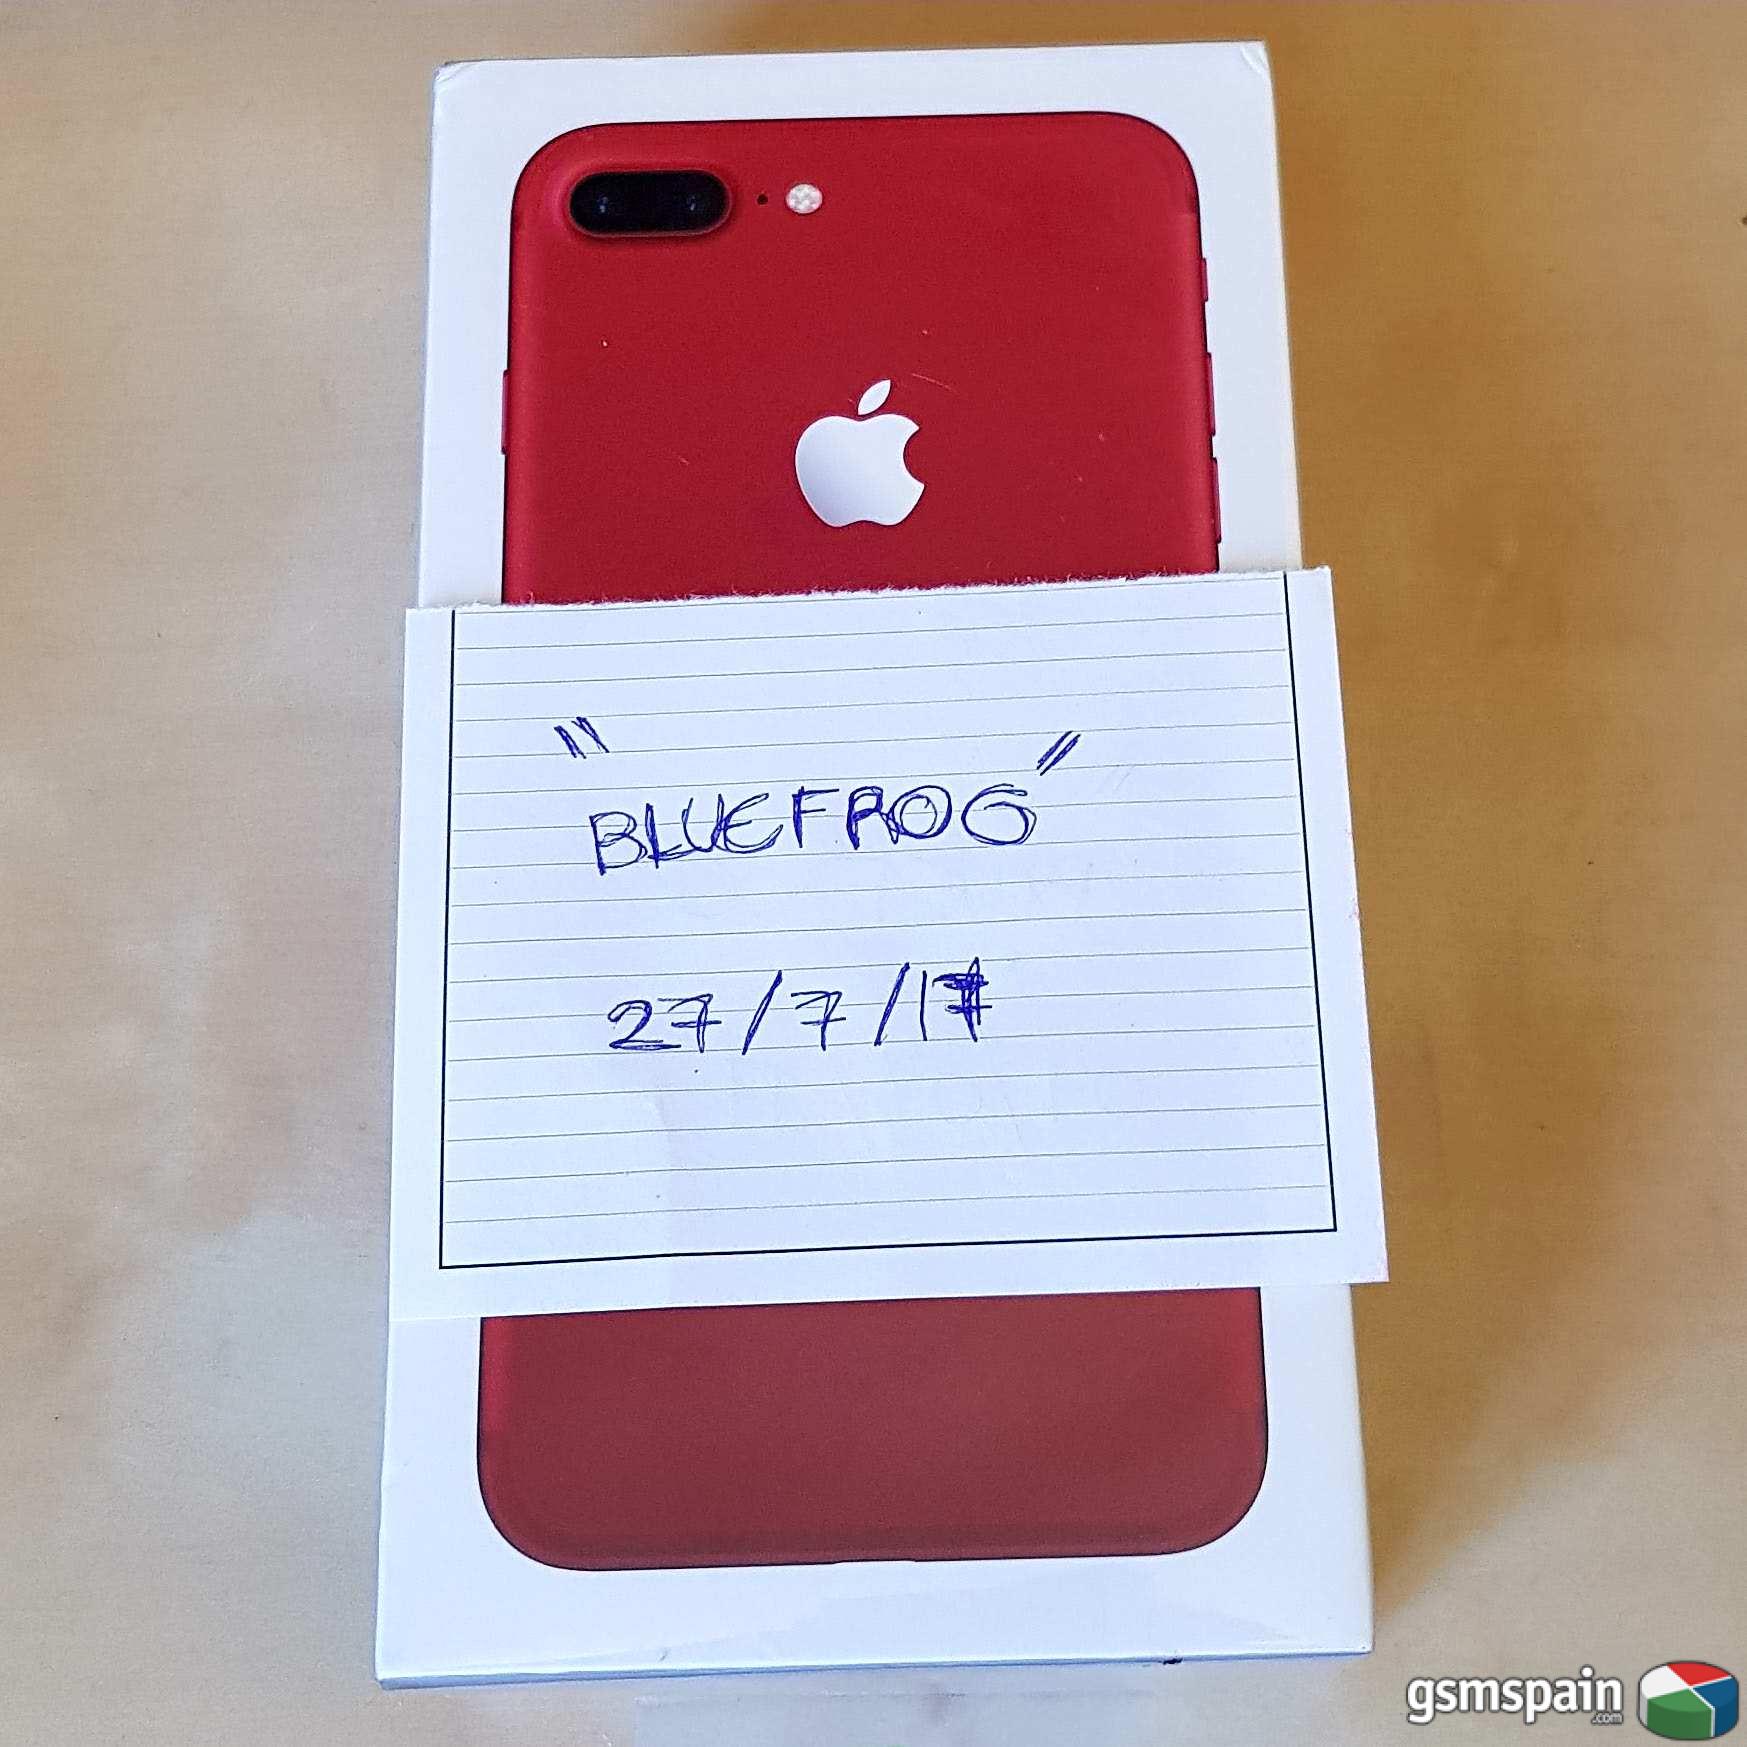 [VENDO] (())iphone 7 plus 128gb rojo red edition, precintado y factura(())